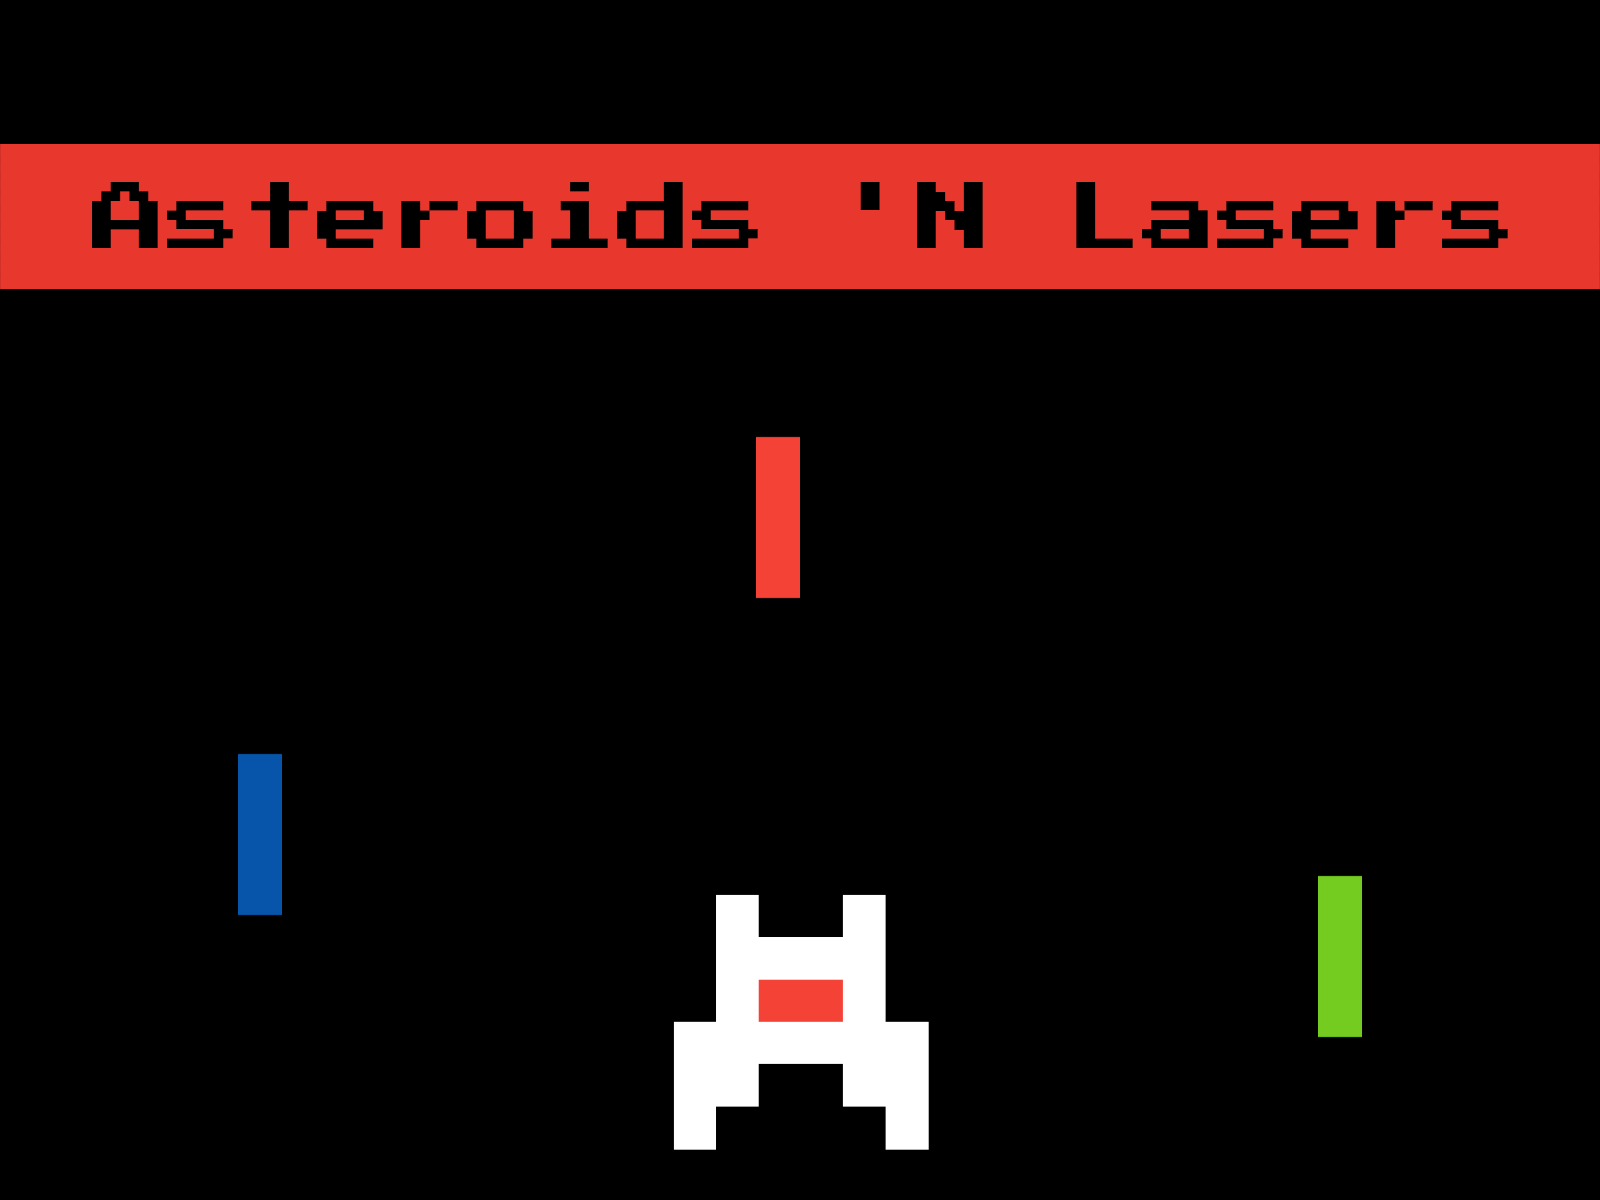 Asteroids 'N Lasers